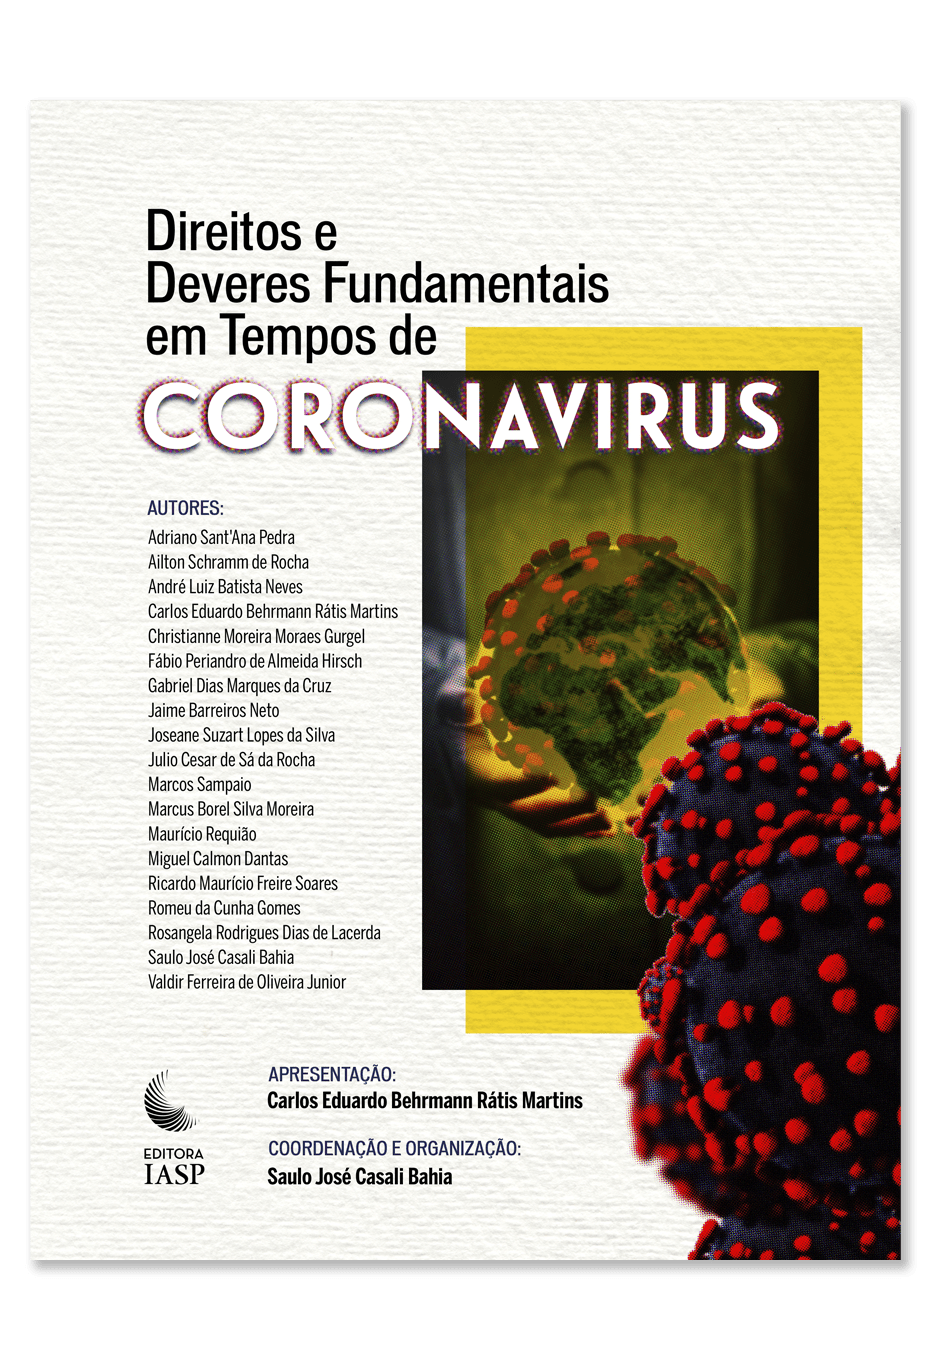 Iniciativas divinas de editoras e grupos em tempos de coronavírus